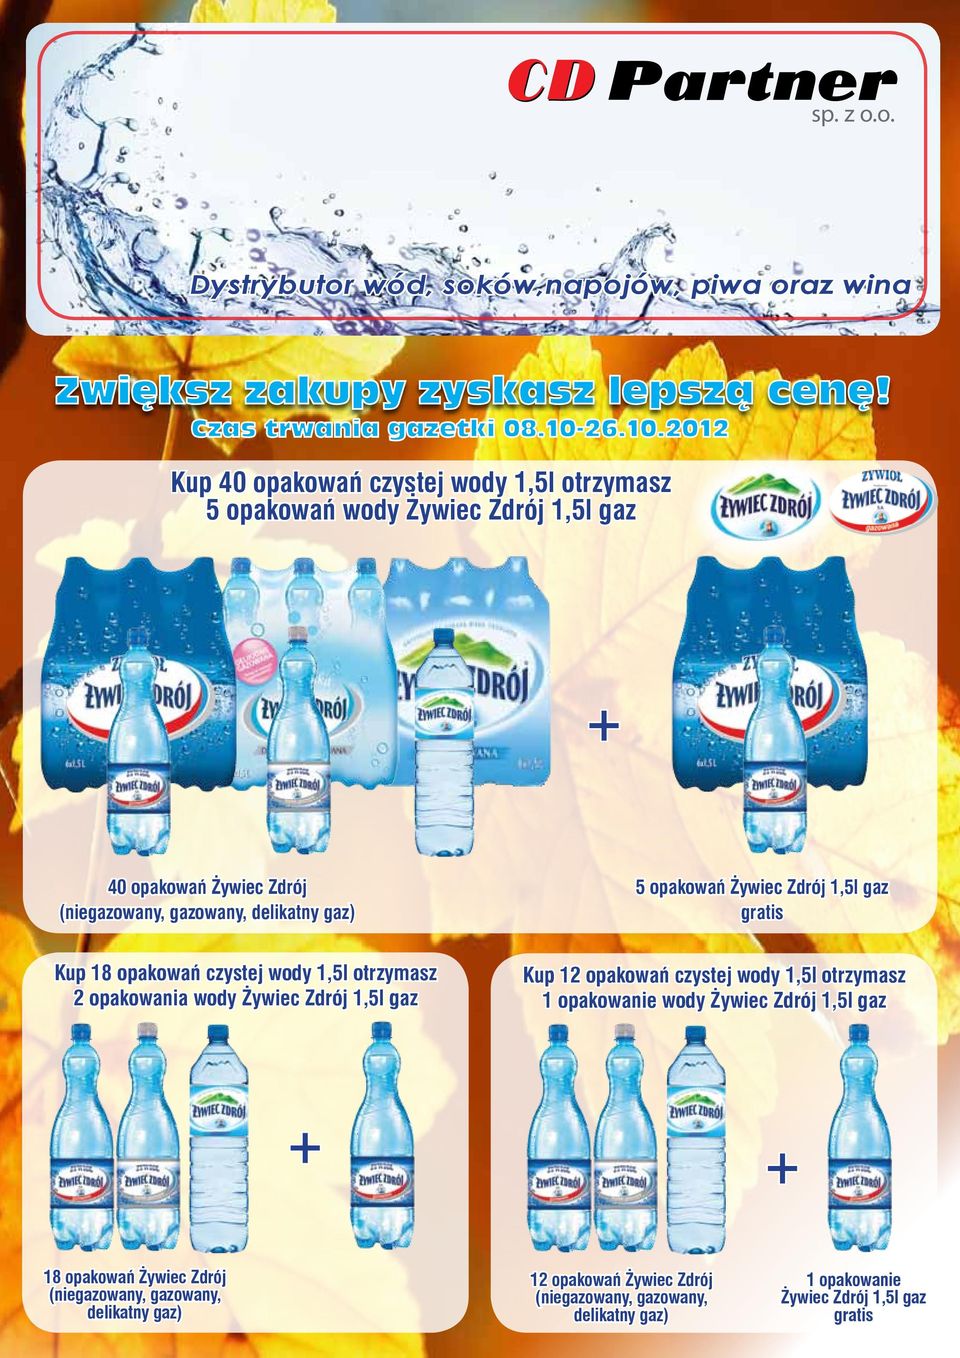 2012 Kup 40 opakowań czystej wody 1,5l otrzymasz 5 opakowań wody Żywiec Zdrój 1,5l gaz 40 opakowań Żywiec Zdrój (niegazowany, gazowany, delikatny gaz) 5